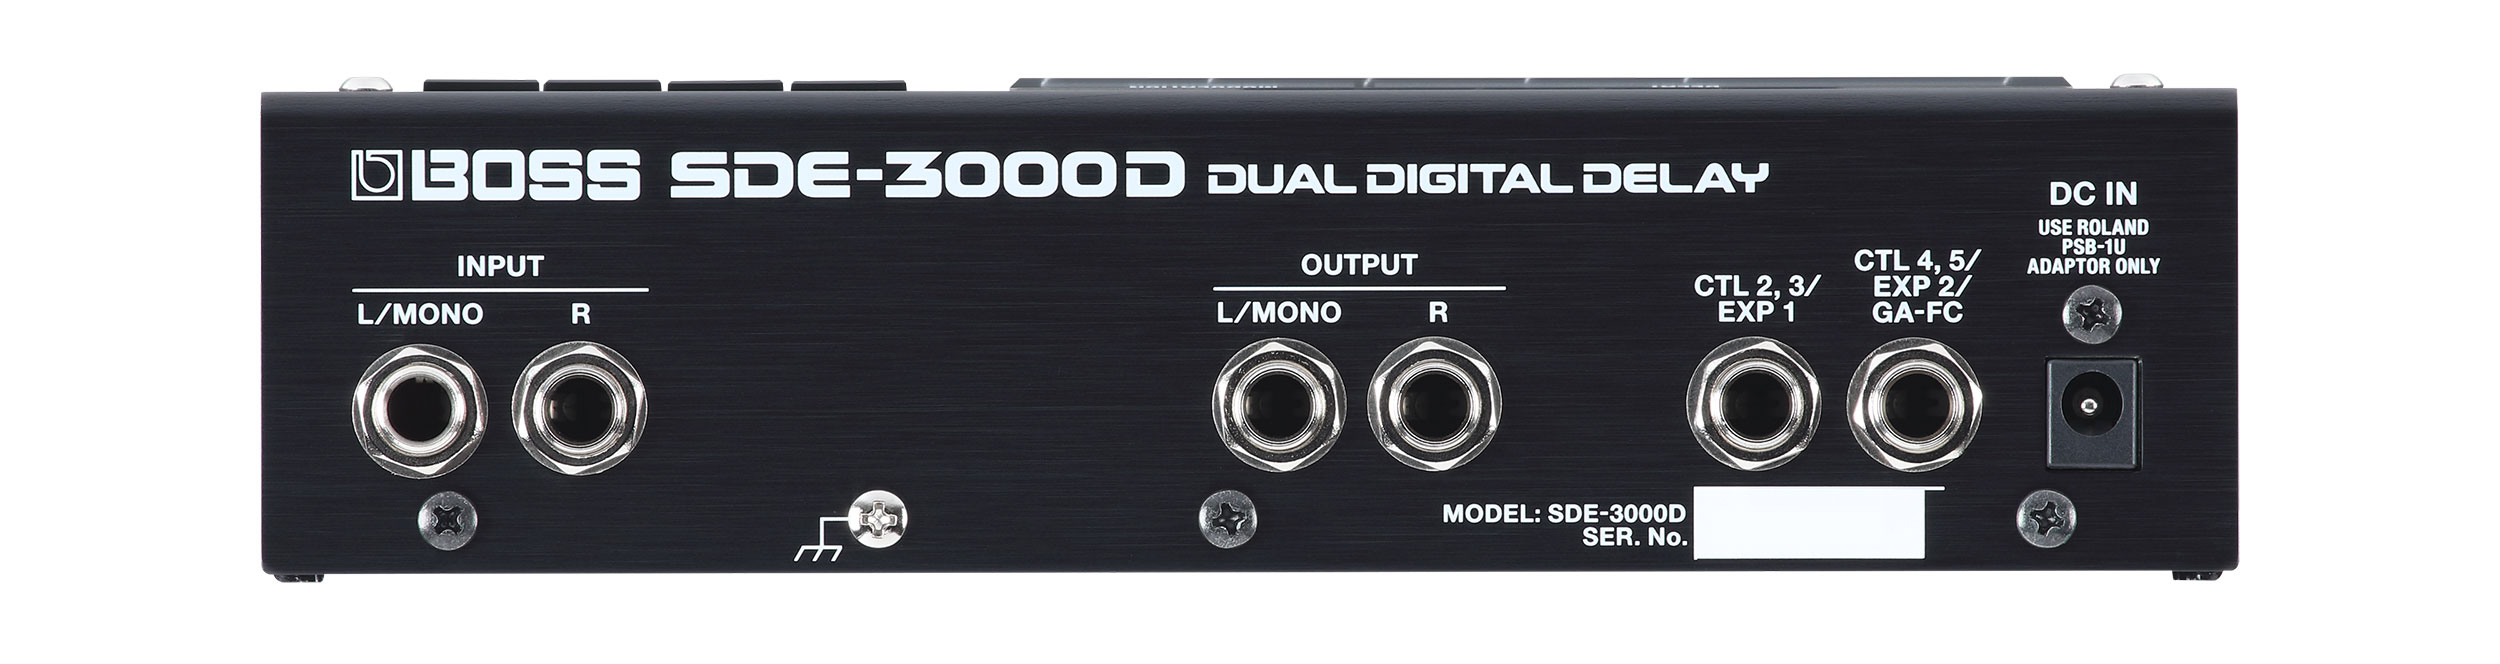 BOSS SDE-3000D Dual Digital Delay | guitarguitar